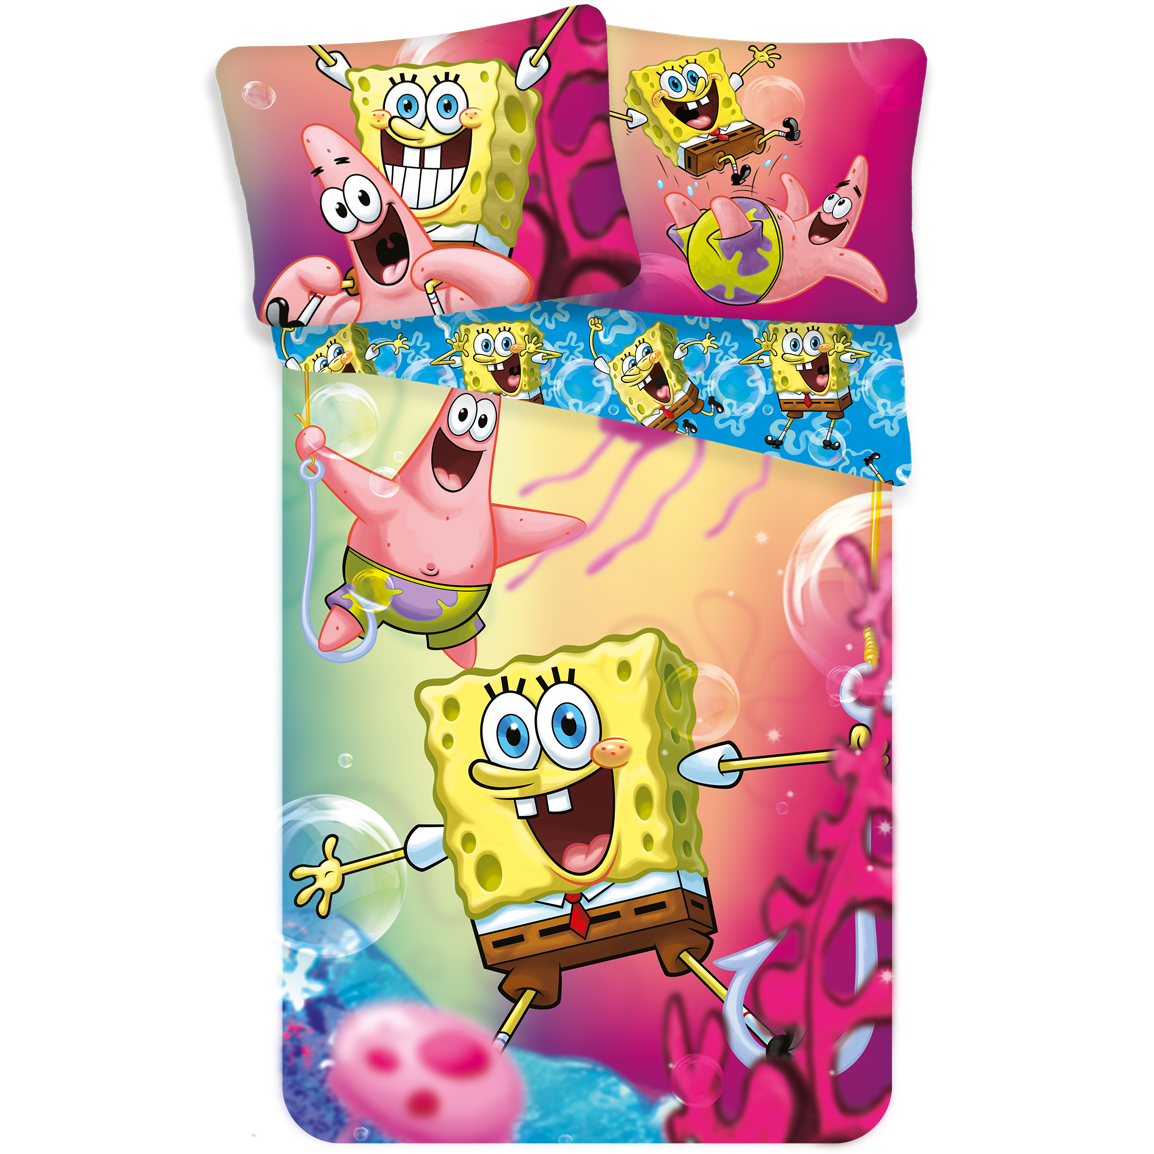 SpongeBob Dekbedovertrek Fun - Eenpersoons - 140 x 200 cm - Multi pre order